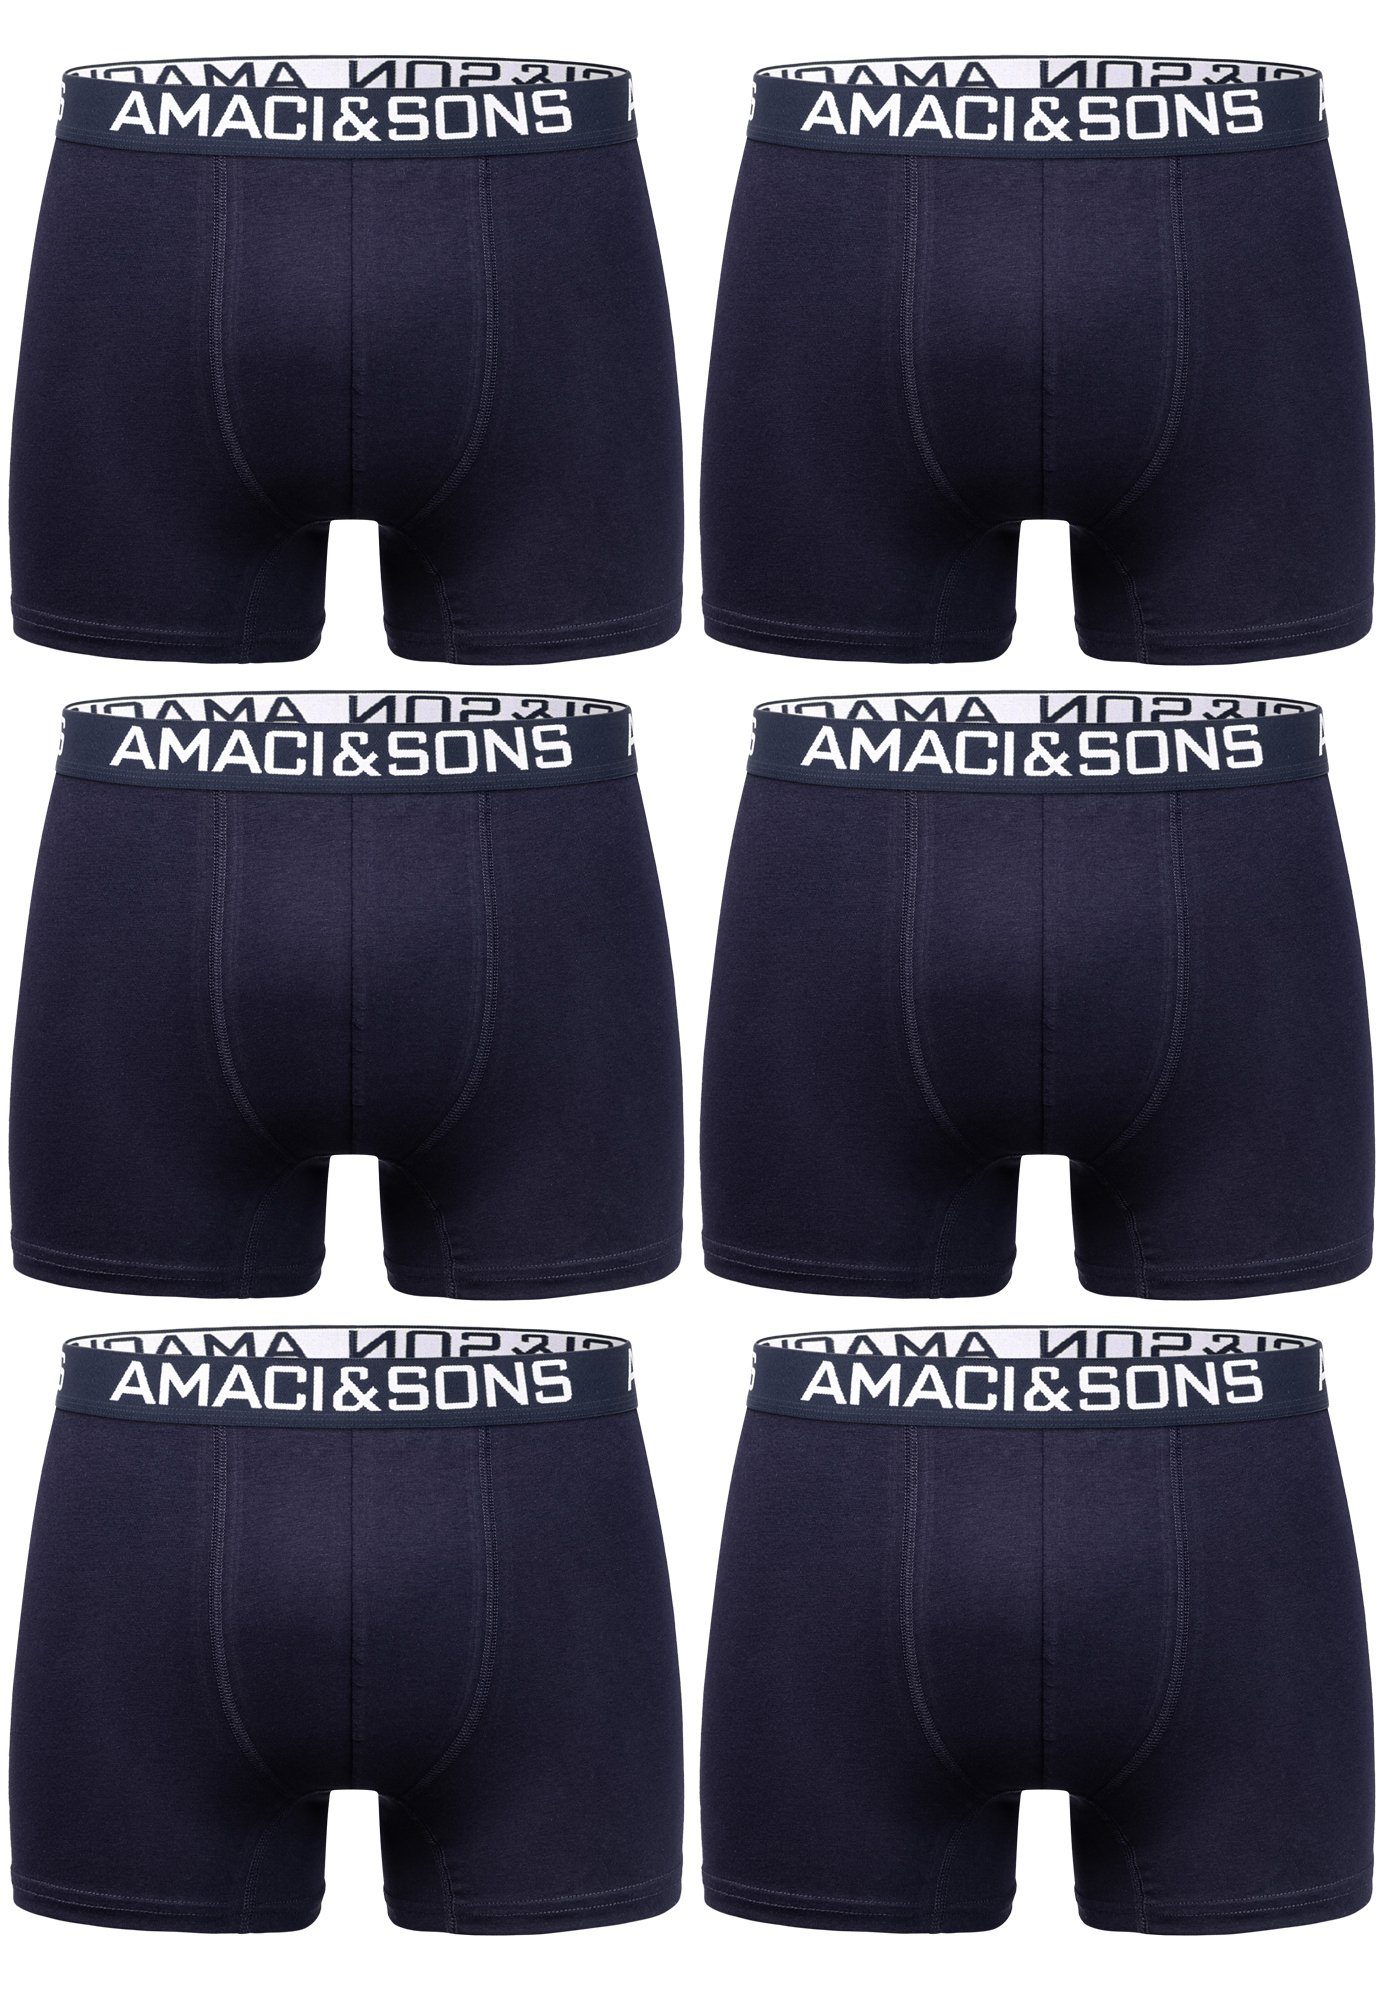 Amaci&Sons Boxershorts WESTON 6er Pack Boxershorts (6er-Pack) Herren Baumwolle Männer Unterhose Unterwäsche Navyblau/Navyblau | Boxer anliegend